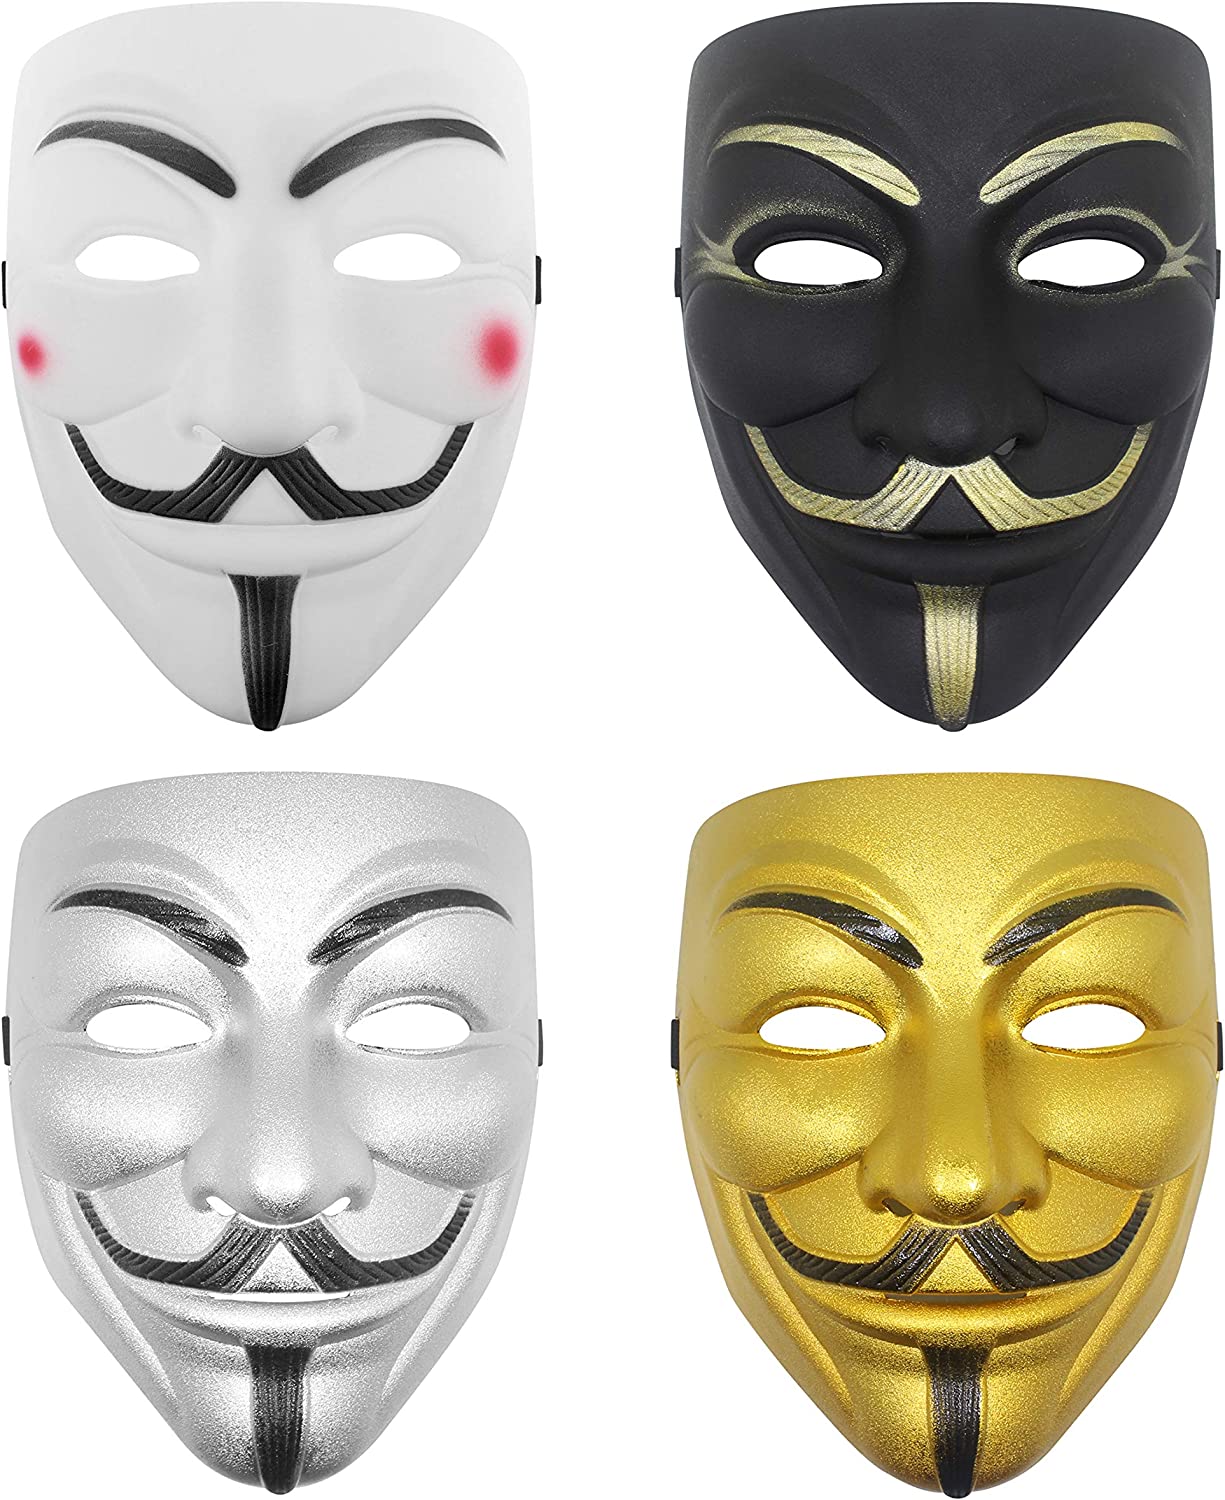 Udekit Hacker Mask V for Vendetta Mask for Kids Women Men Halloween Cosplay Costume